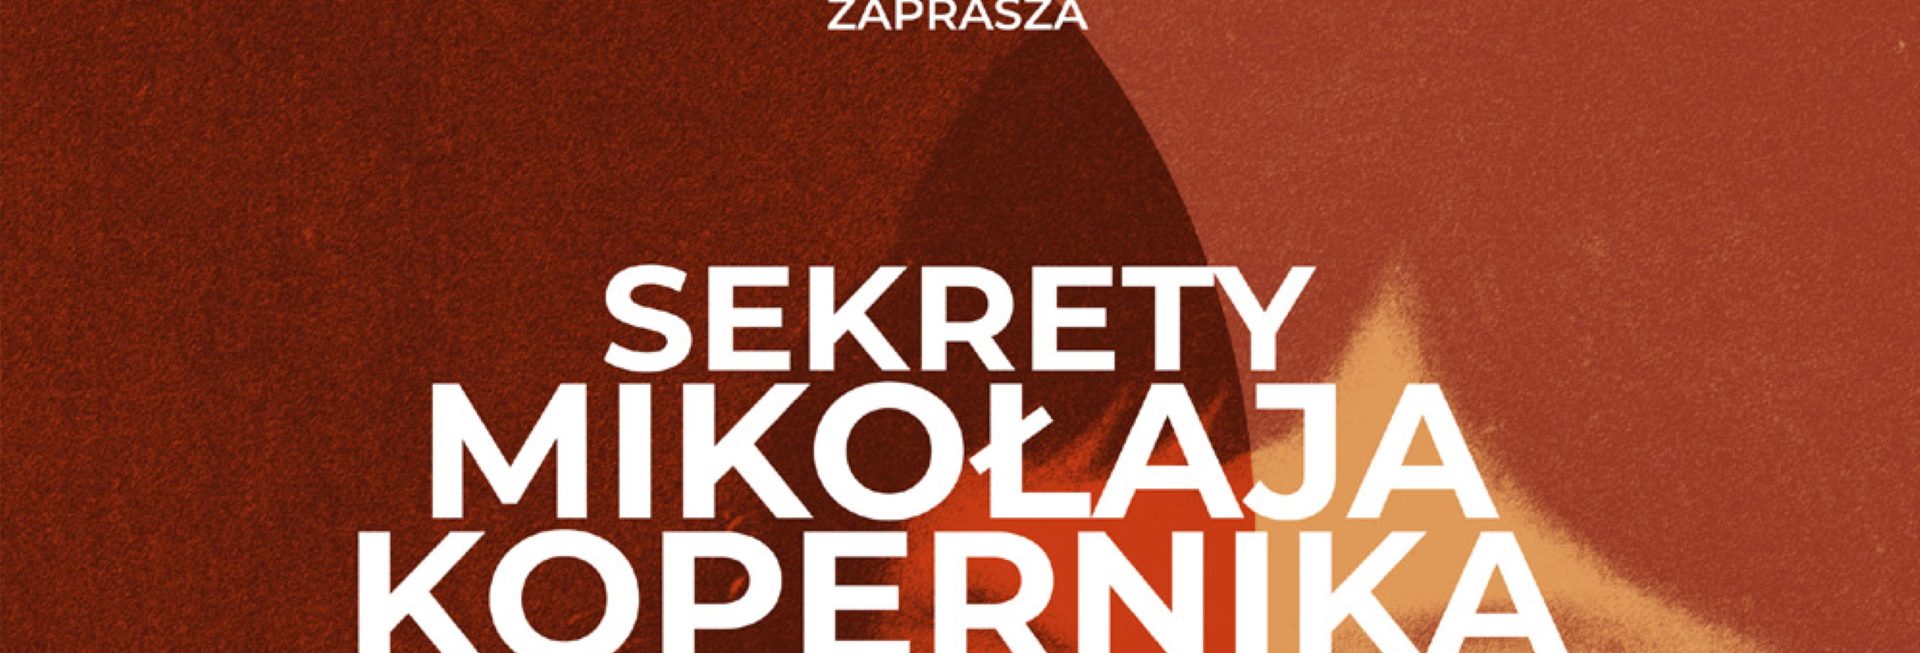 Plakat zapraszający we wtorek 21 lutego 2023 r. do Olsztyńskiego Planetarium na spotkanie w oprawie wizualnej "Sekrety Mikołaja Kopernika" Planetarium Olsztyn 2023.